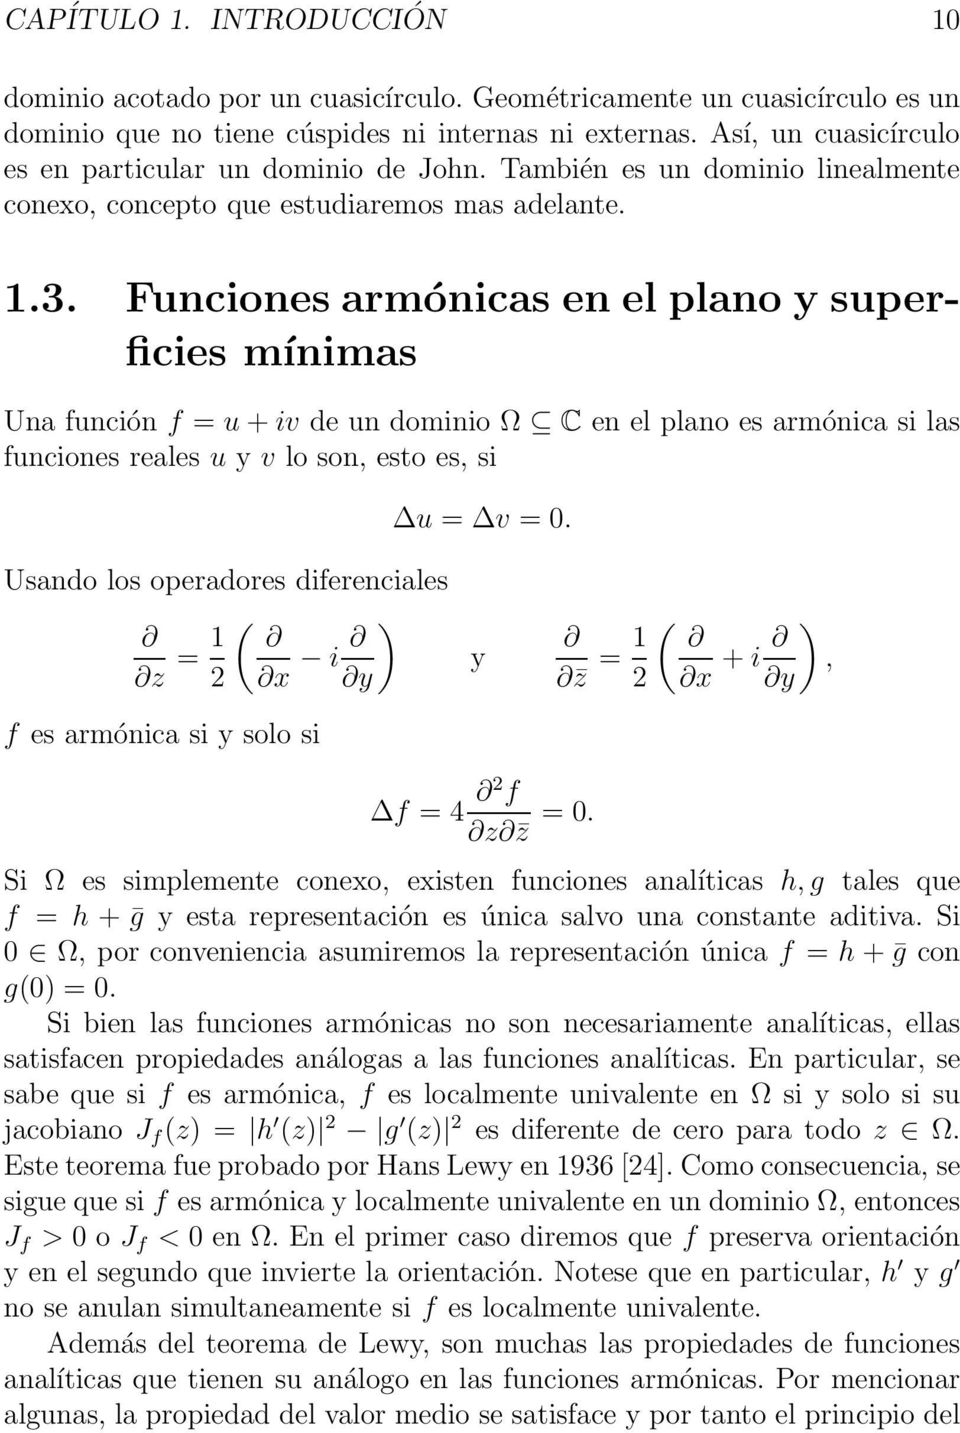 Funciones armónicas en el plano y superficies mínimas Una función f = u+iv de un dominio Ω C en el plano es armónica si las funciones reales u y v lo son, esto es, si u = v = 0.